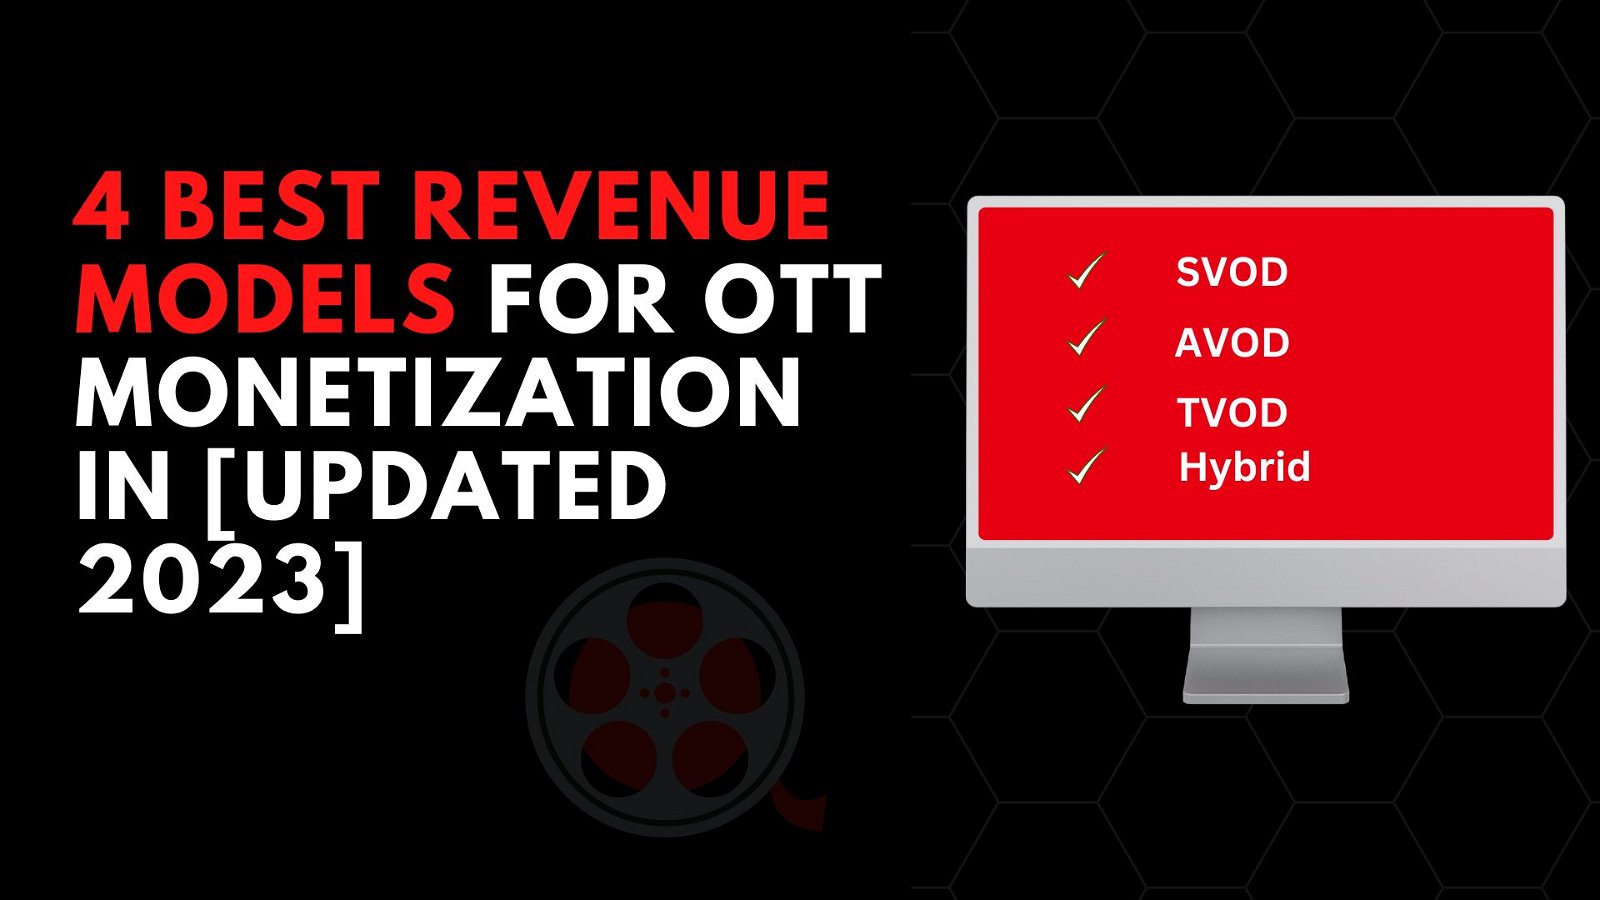 4 Best Revenue Models for OTT Monetization in 2023